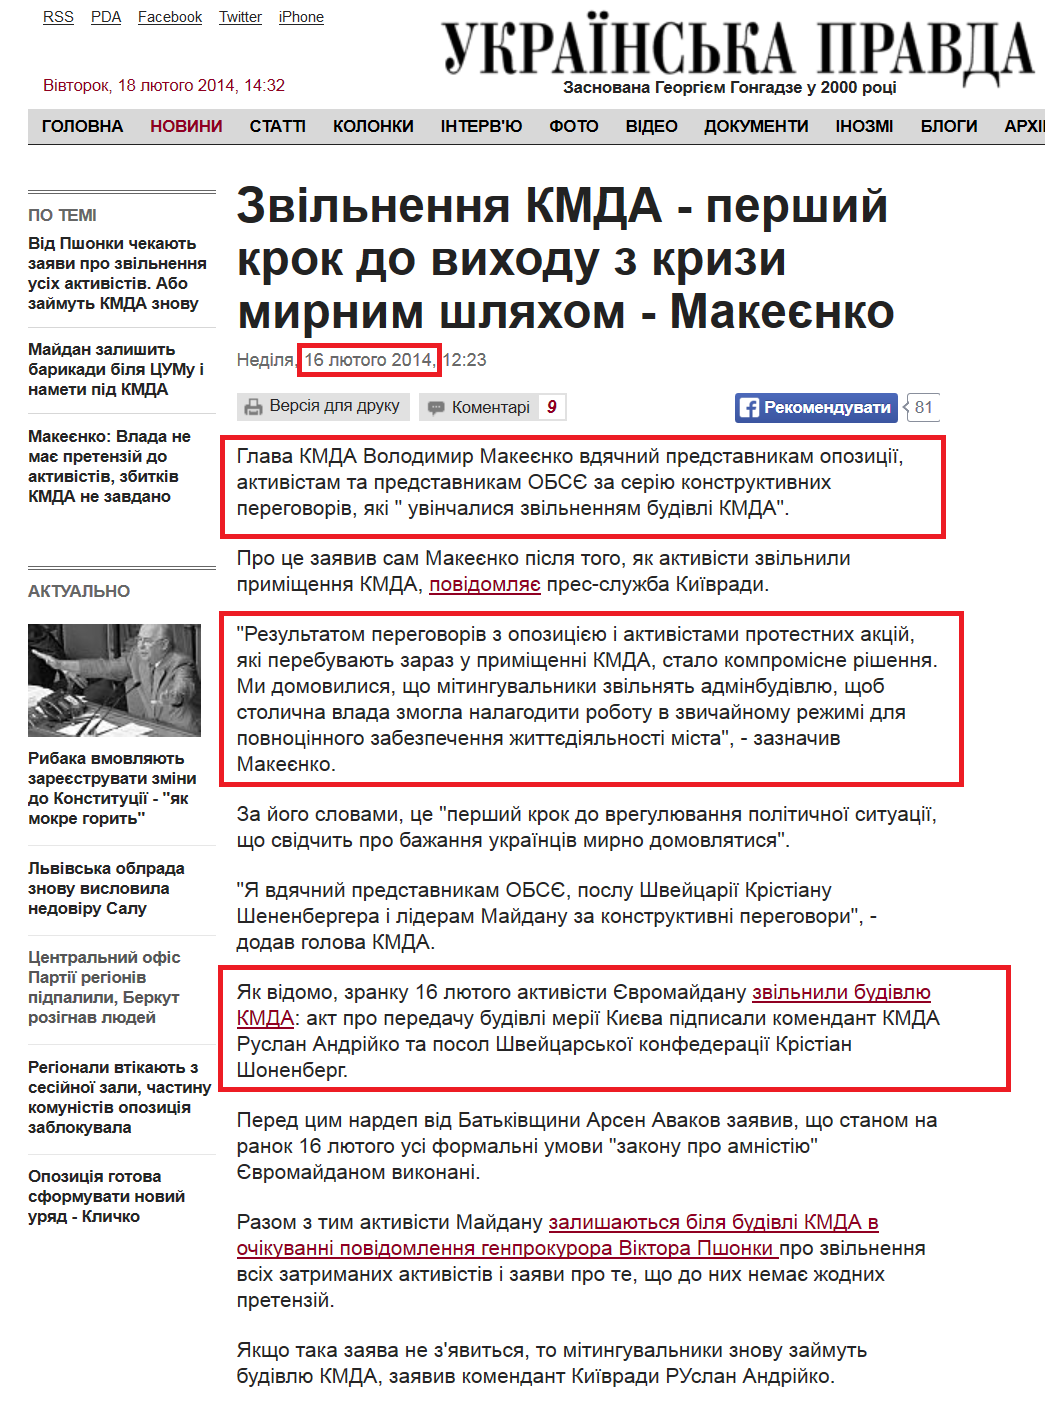 http://www.pravda.com.ua/news/2014/02/16/7014006/